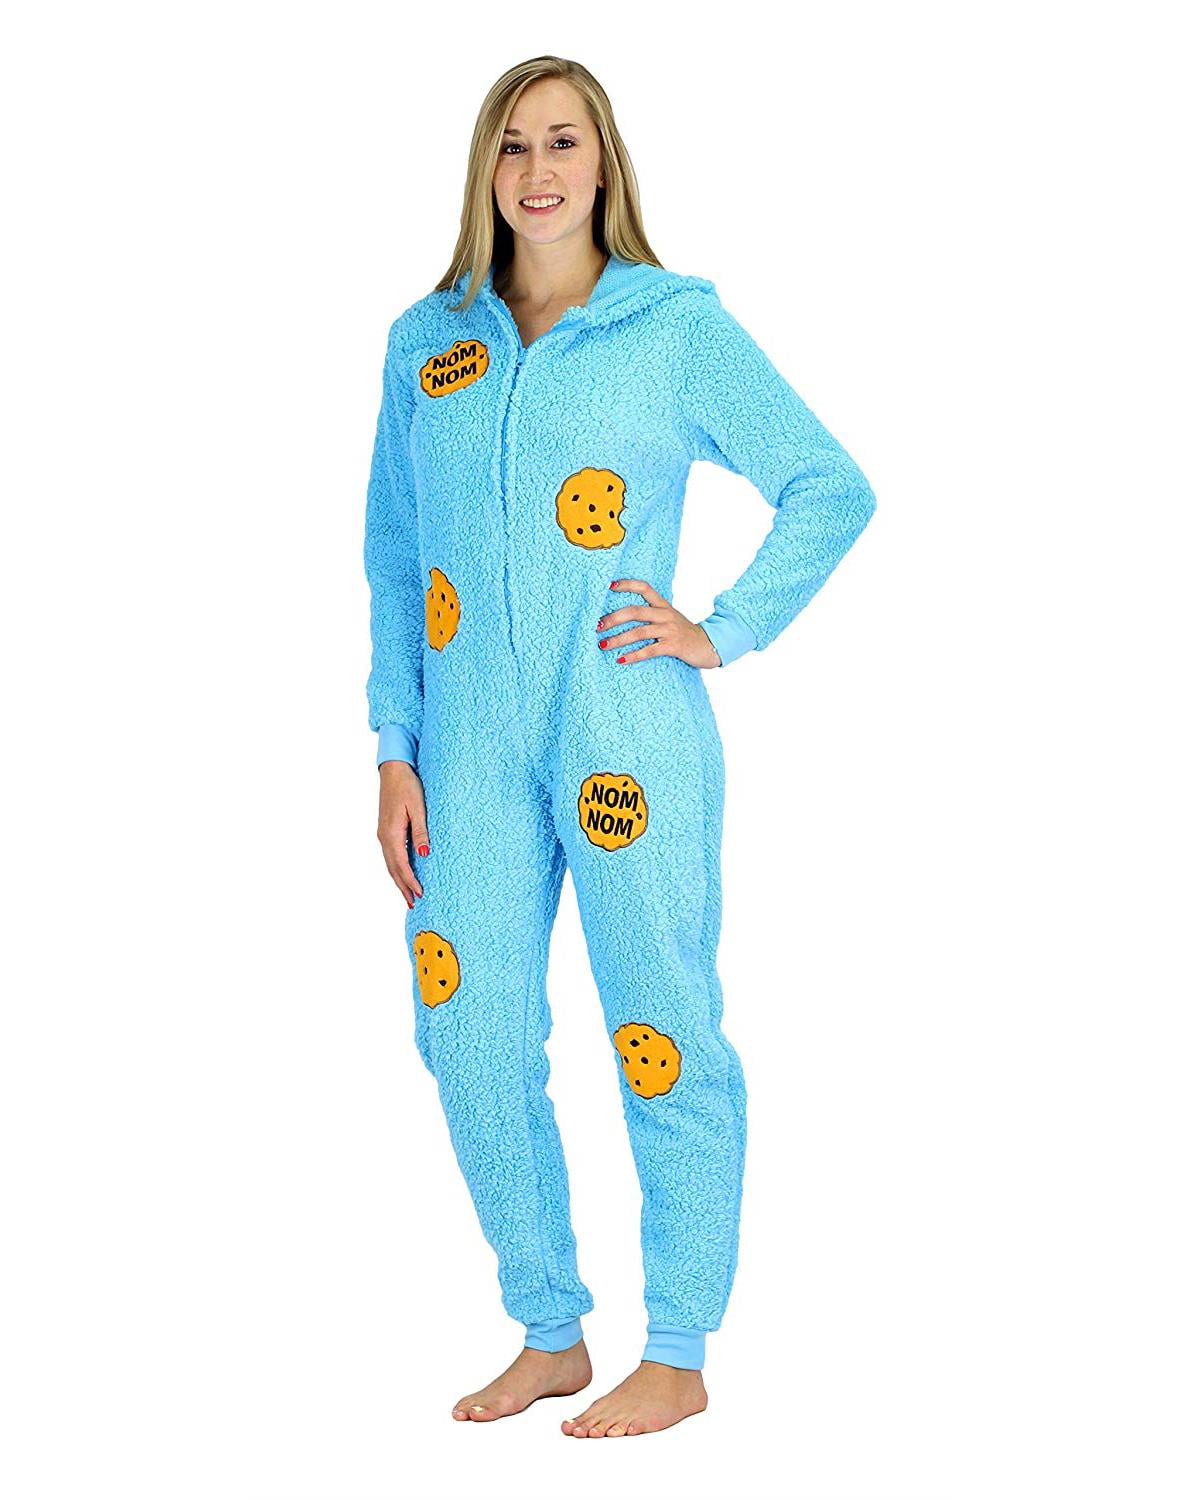 NEW Womens Pajamas Size XL Plus 1X 2X Onesie One Piece Union Suit Feet Zipper 